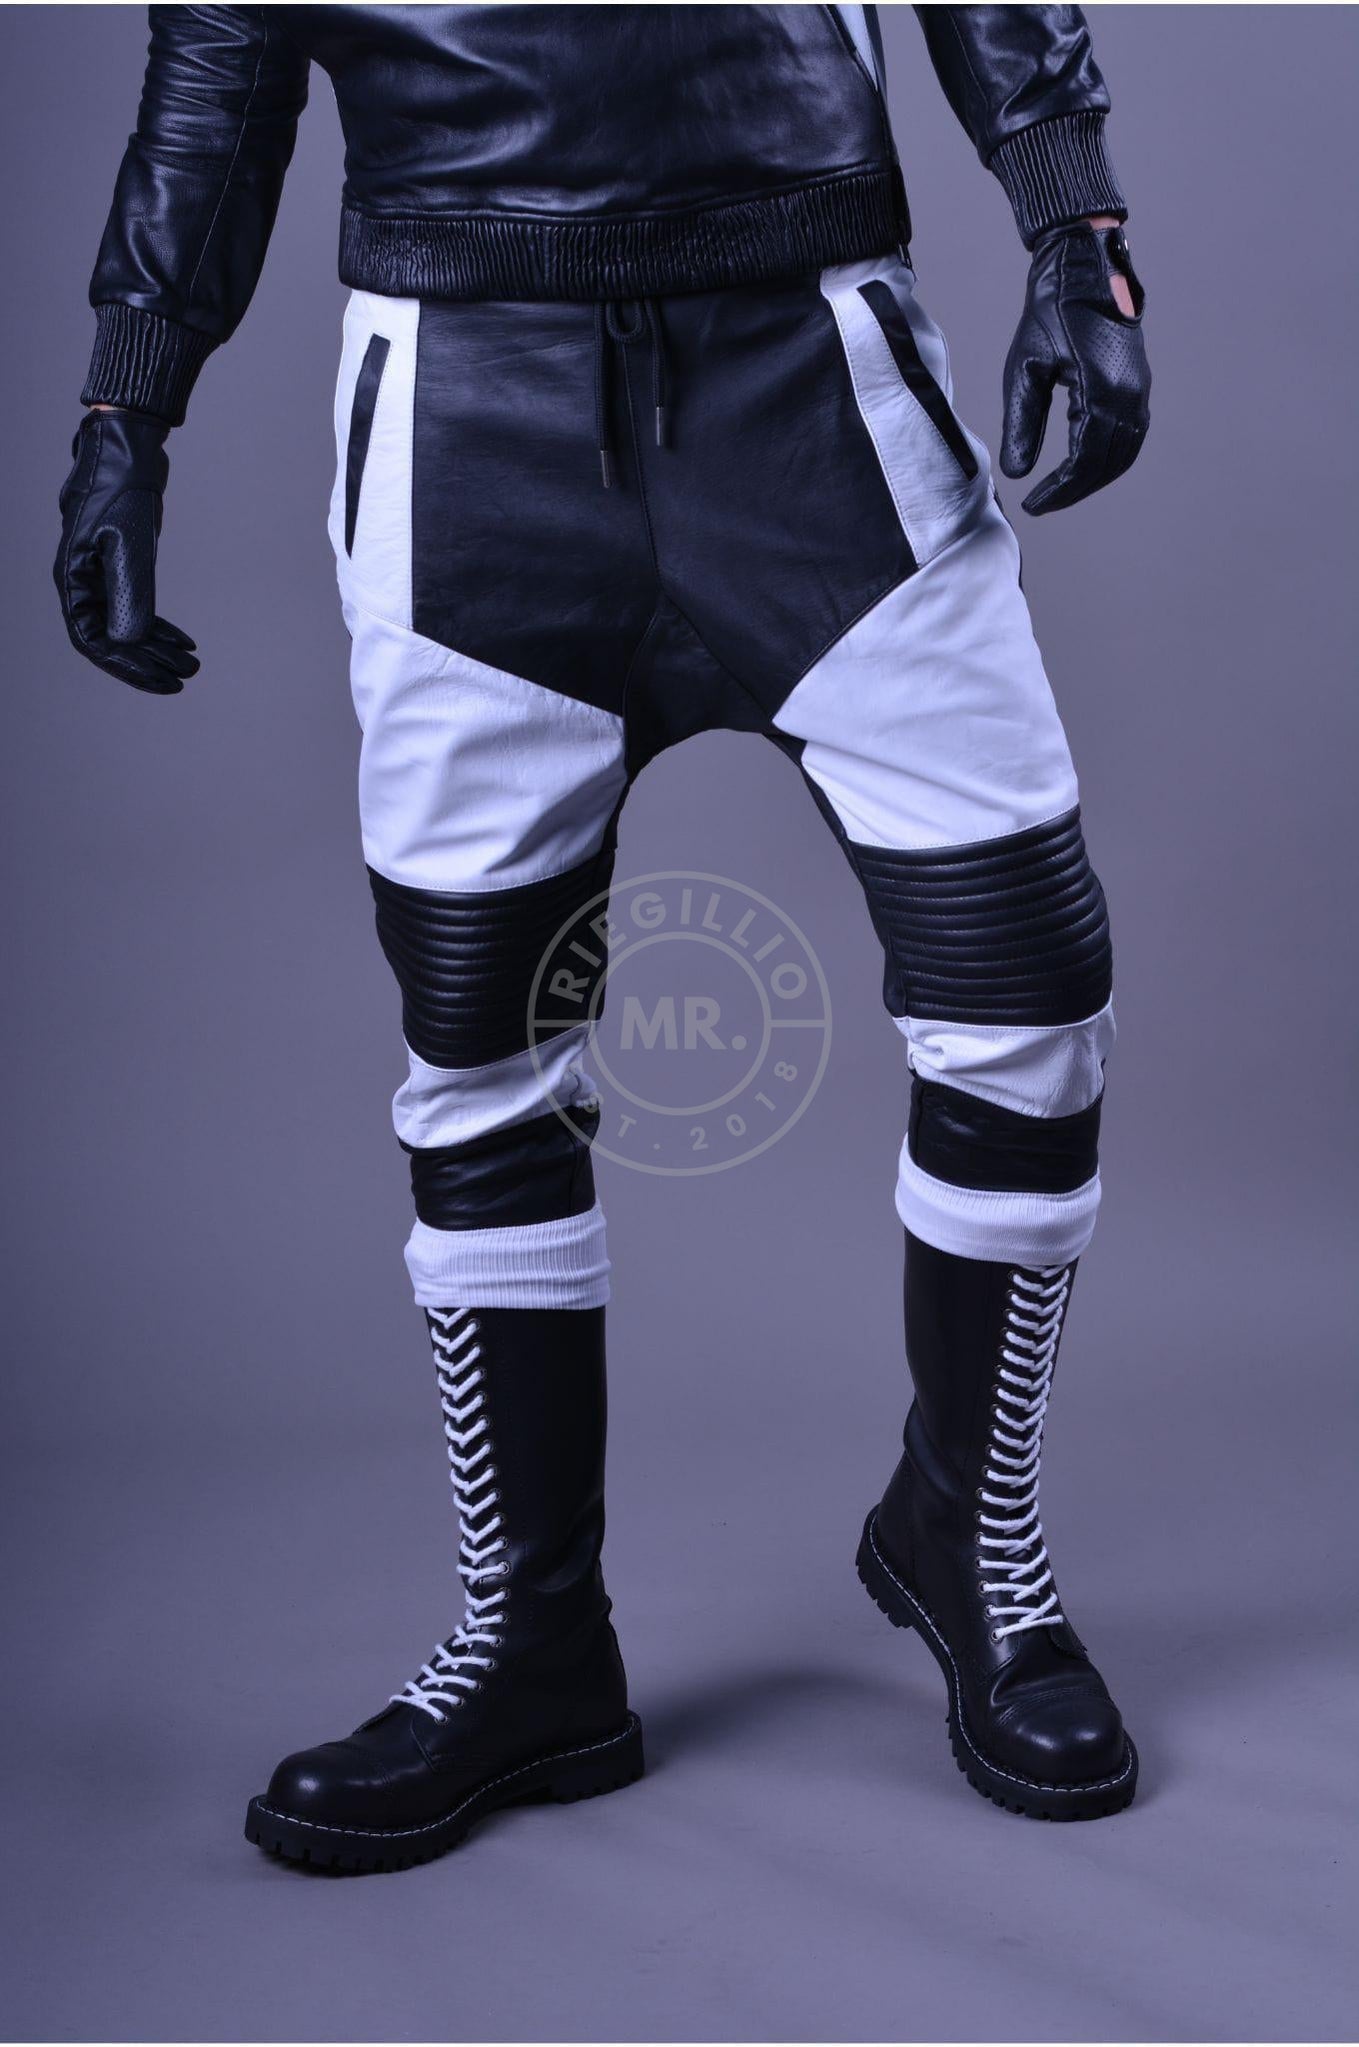 Leather Jogger Black&White at MR. Riegillio